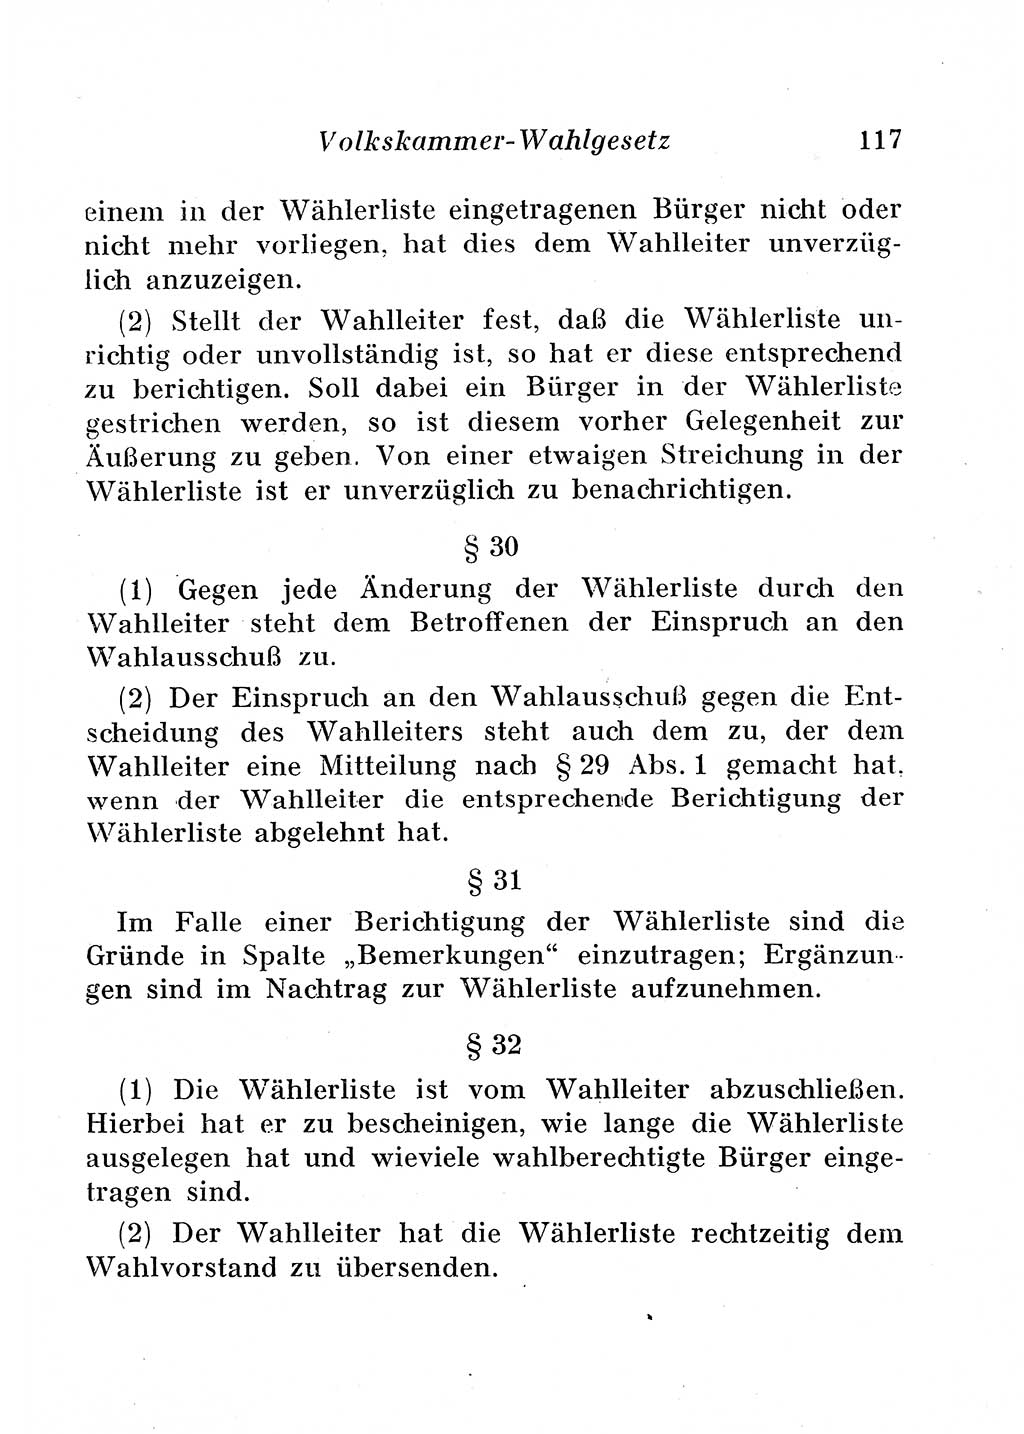 Staats- und verwaltungsrechtliche Gesetze der Deutschen Demokratischen Republik (DDR) 1958, Seite 117 (StVerwR Ges. DDR 1958, S. 117)